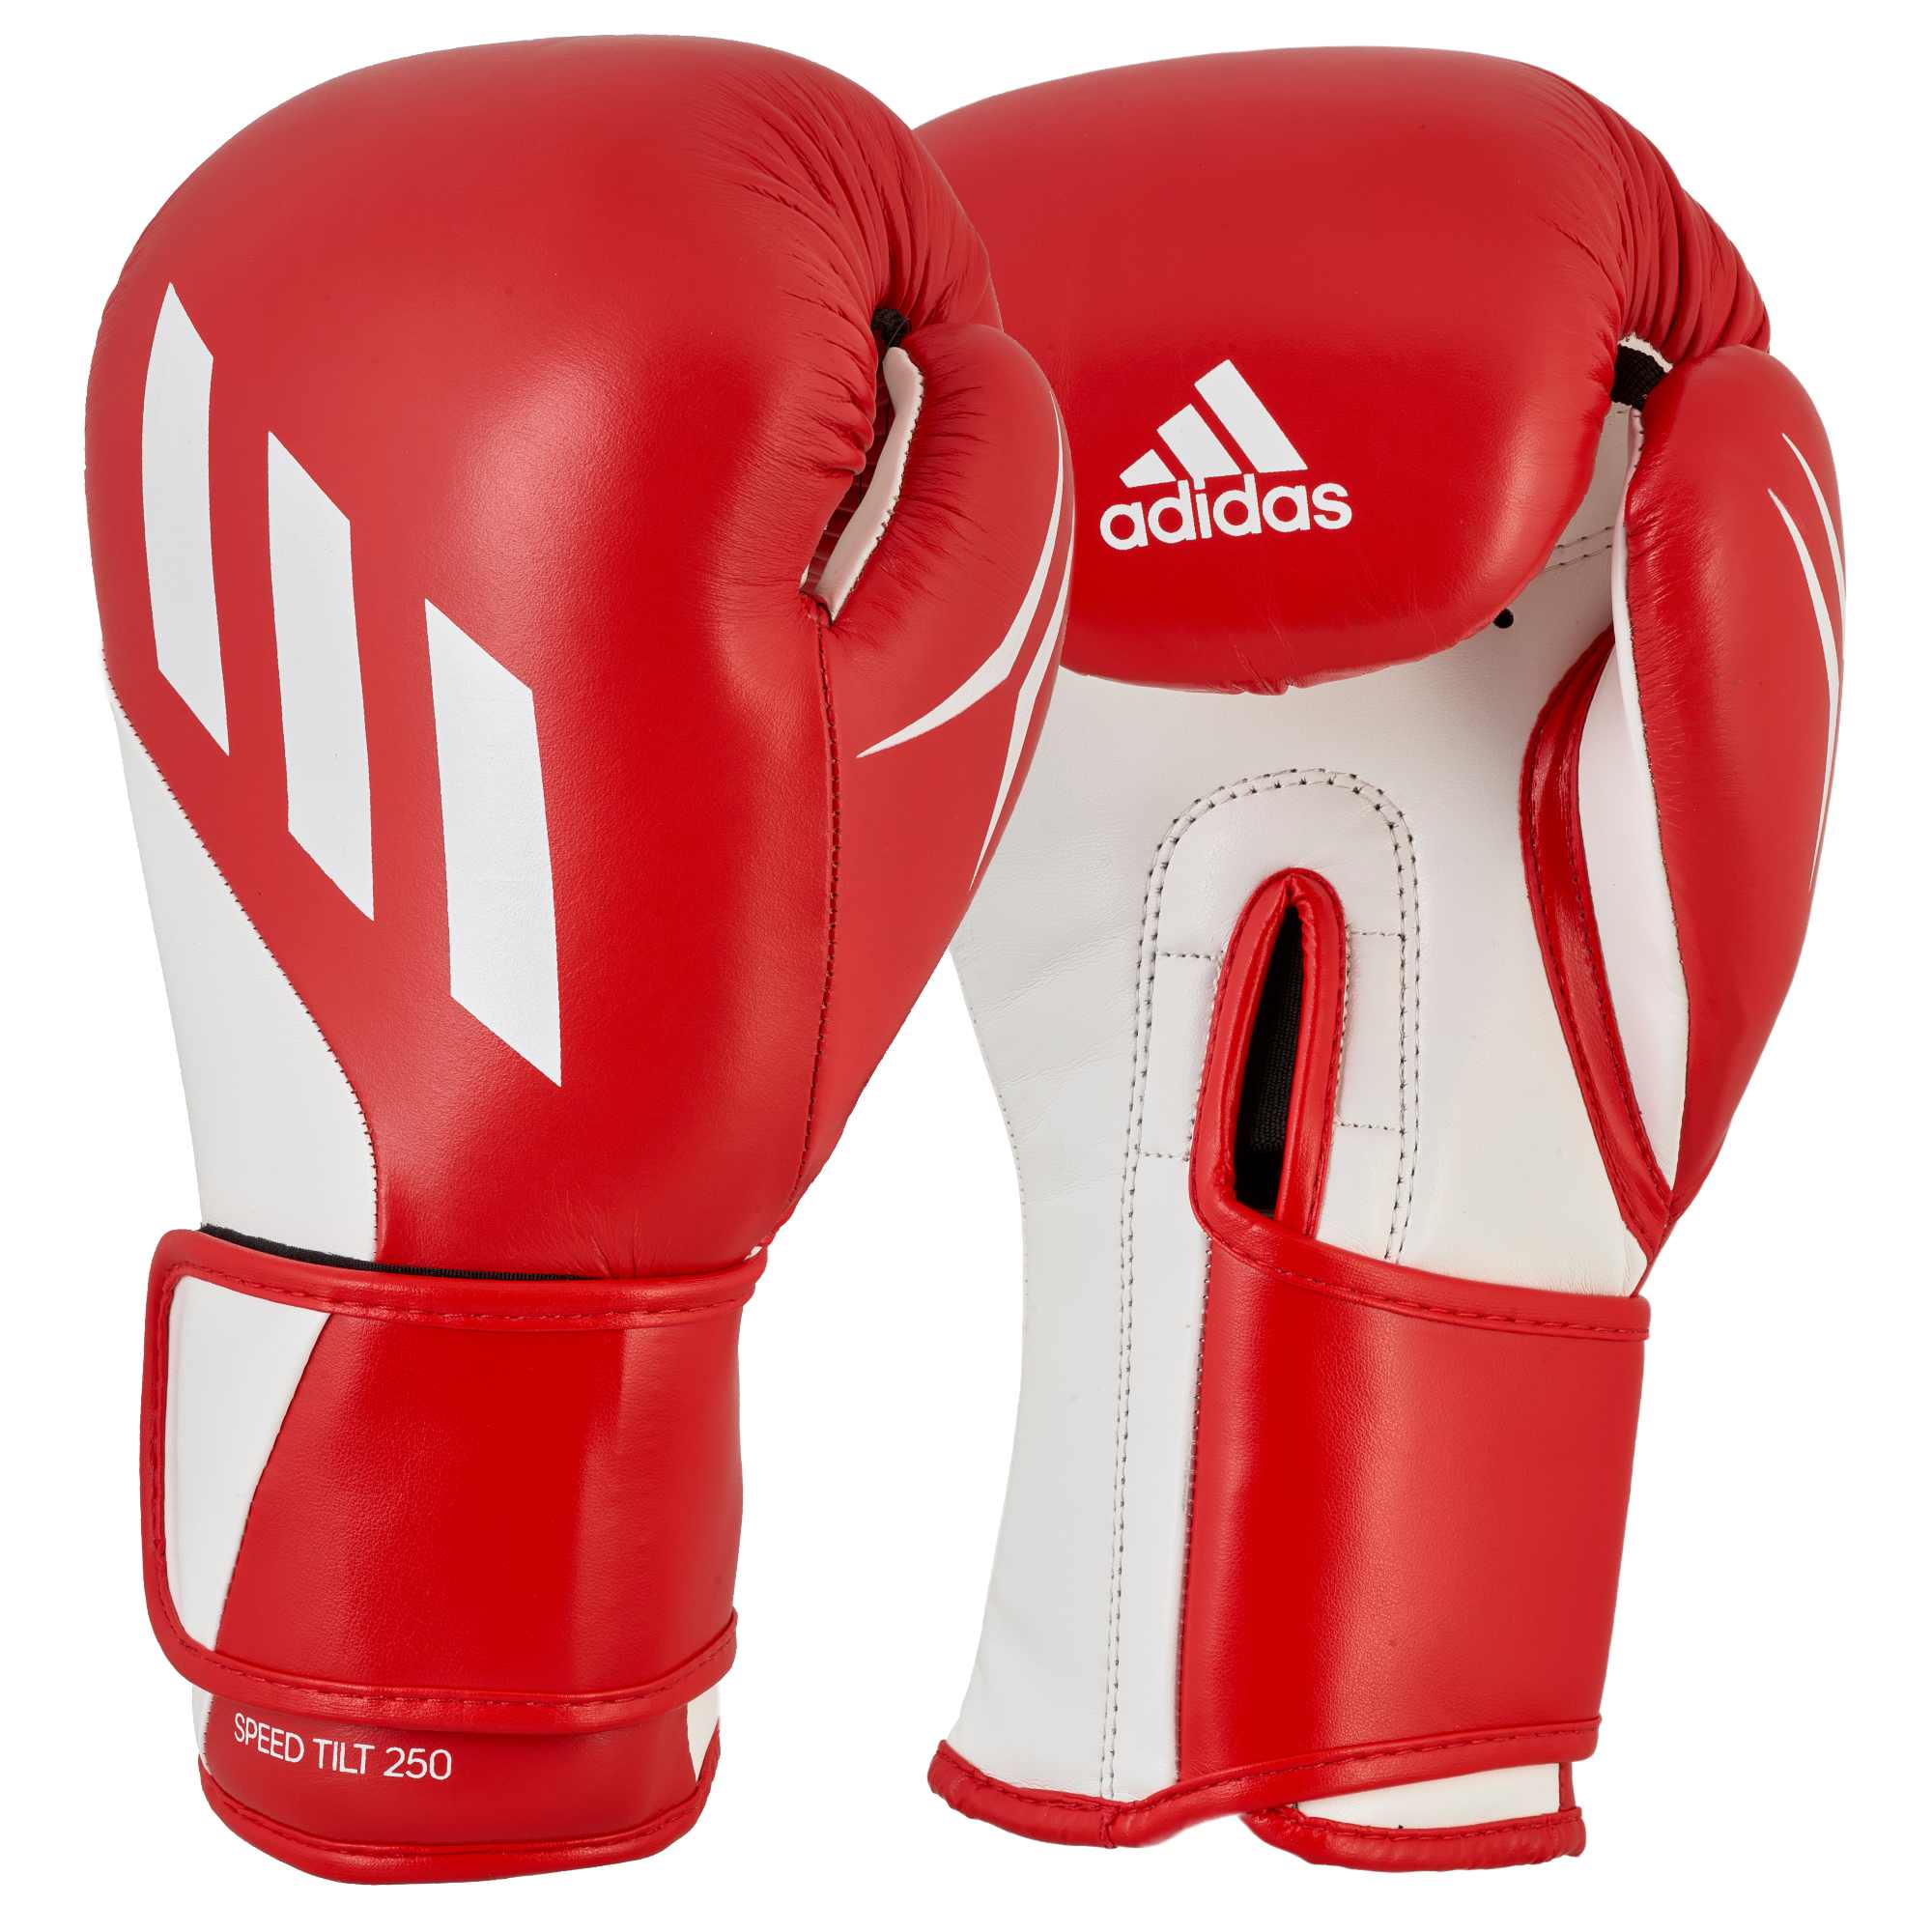 Adidas Boxhandschuhe SPEED TILT 250 Rot/Weiss